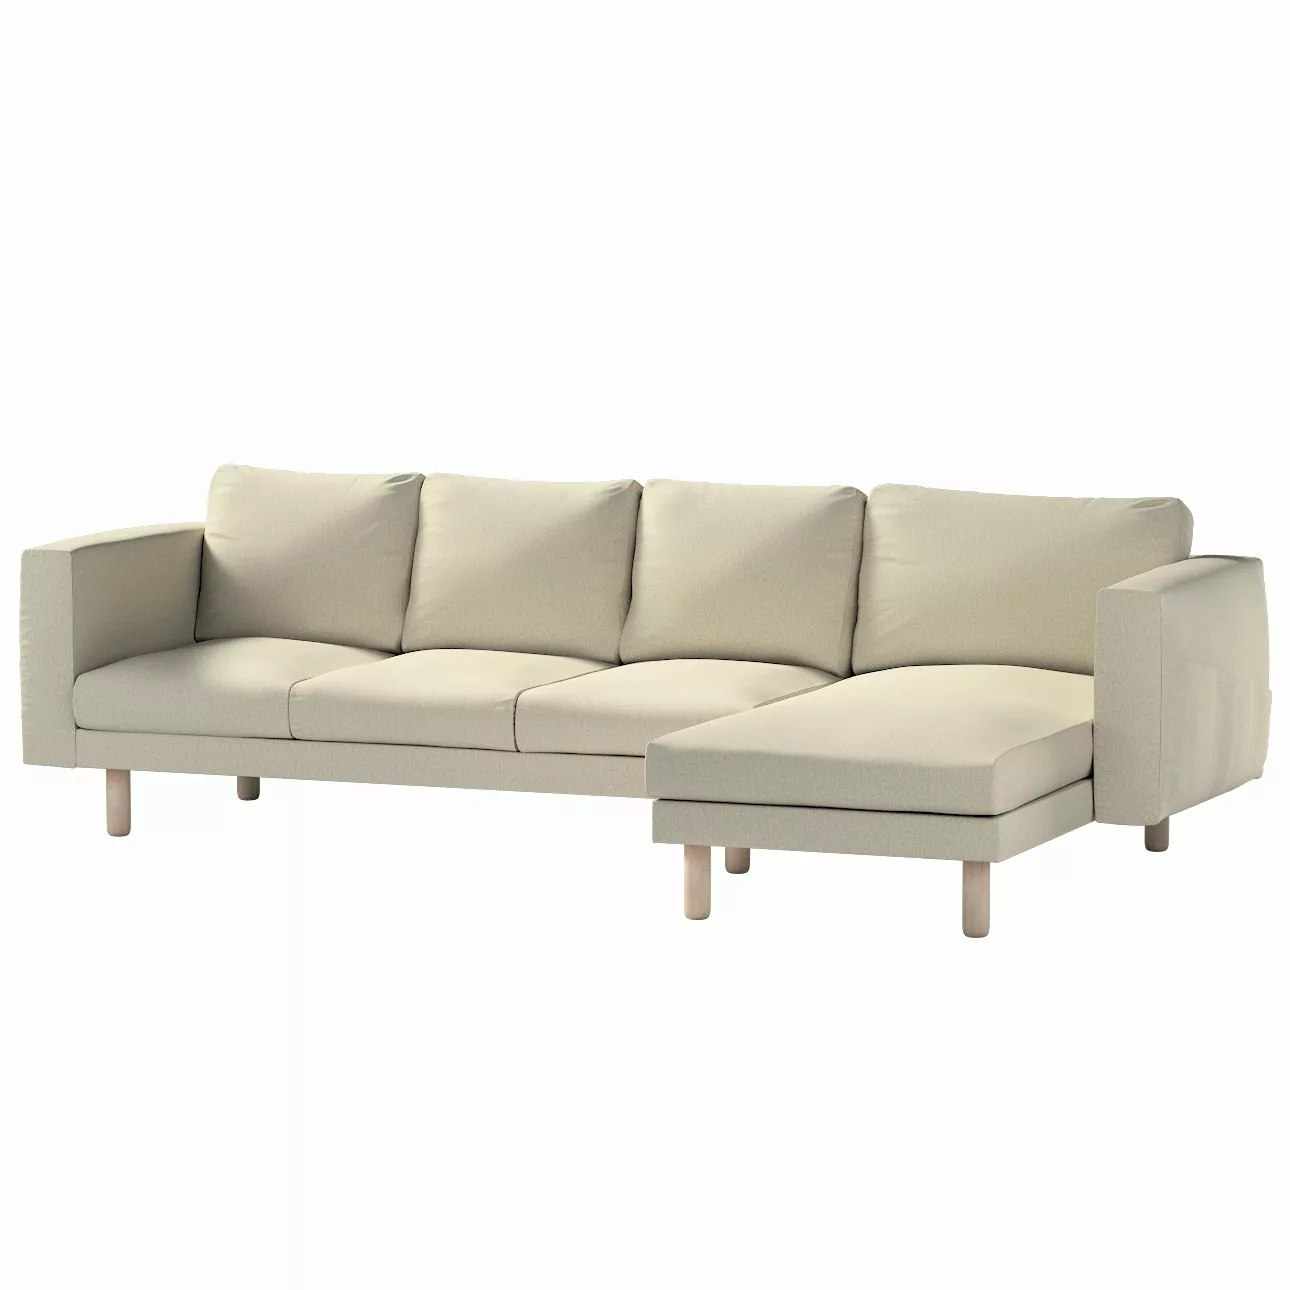 Bezug für Norsborg 4-Sitzer Sofa mit Recamiere, beige-grau, Norsborg Bezug günstig online kaufen